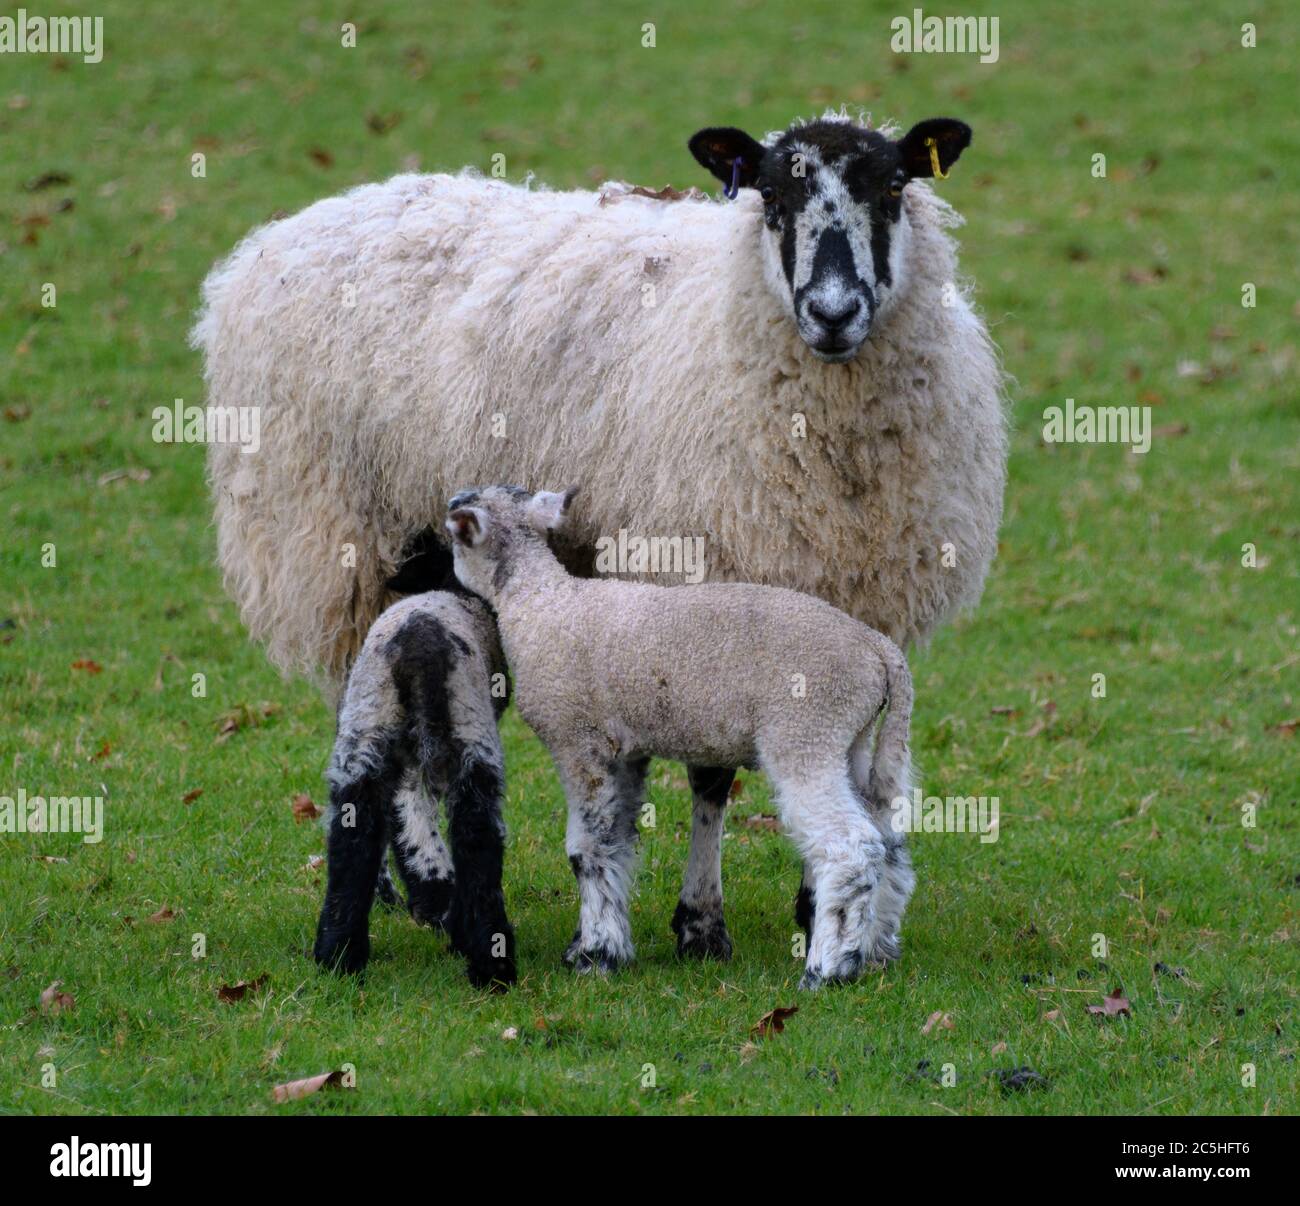 Un mouflon de Kerry Hill nourrissant deux agneaux Banque D'Images